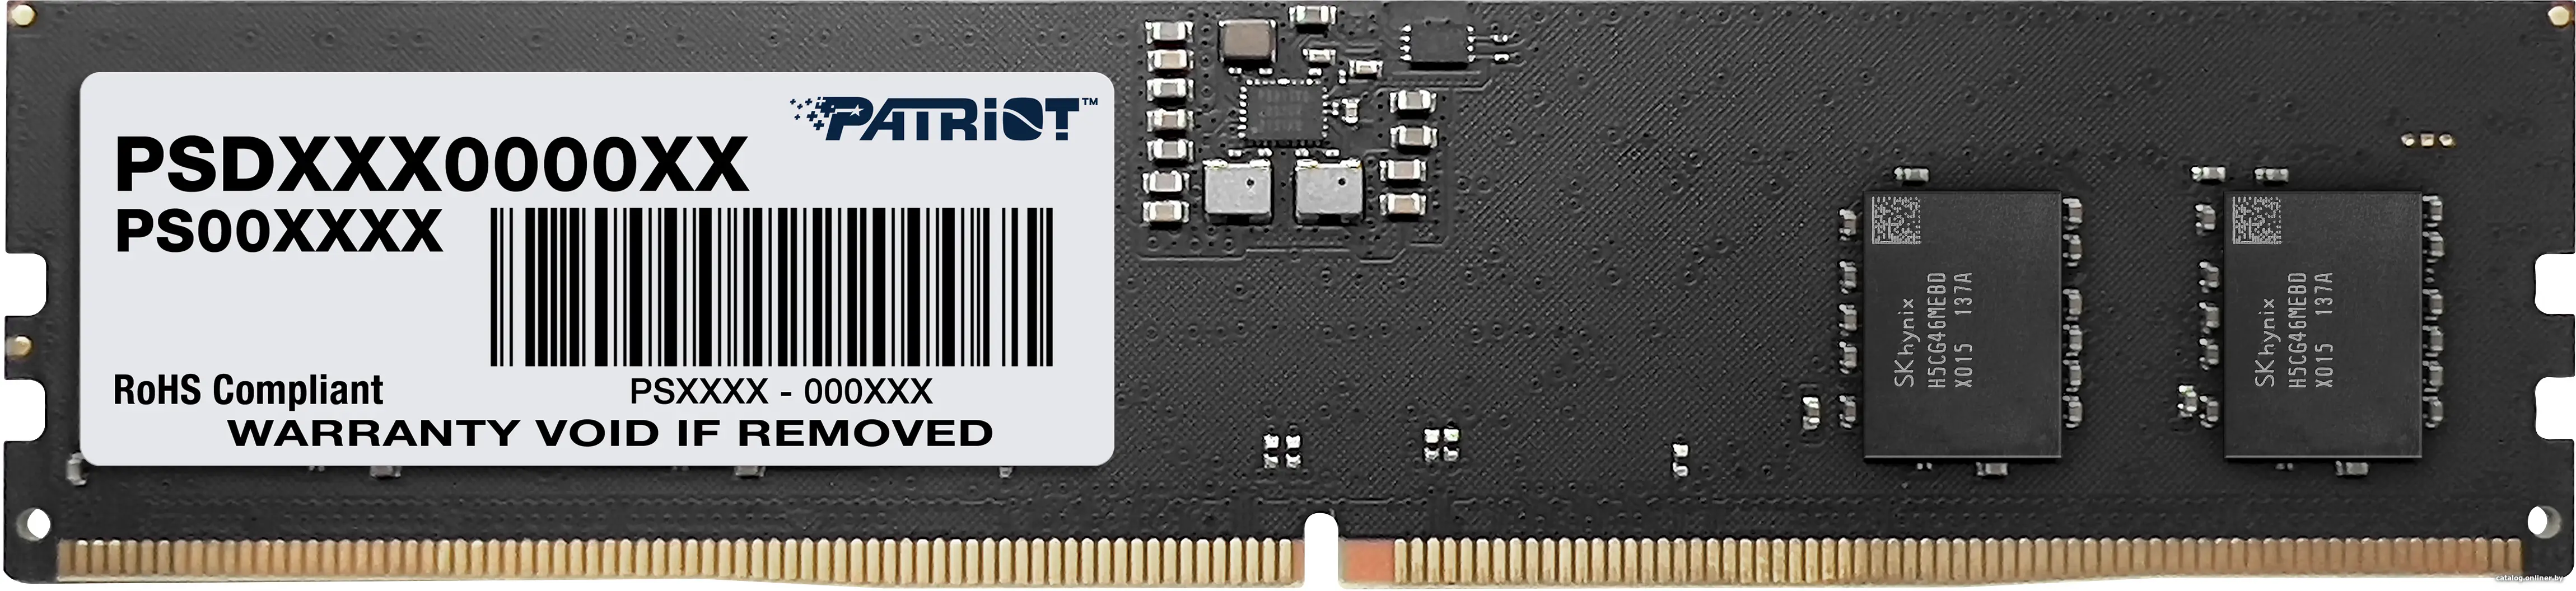 Купить Оперативная память Patriot DDR5 8Gb (PSD58G520041), цена, опт и розница